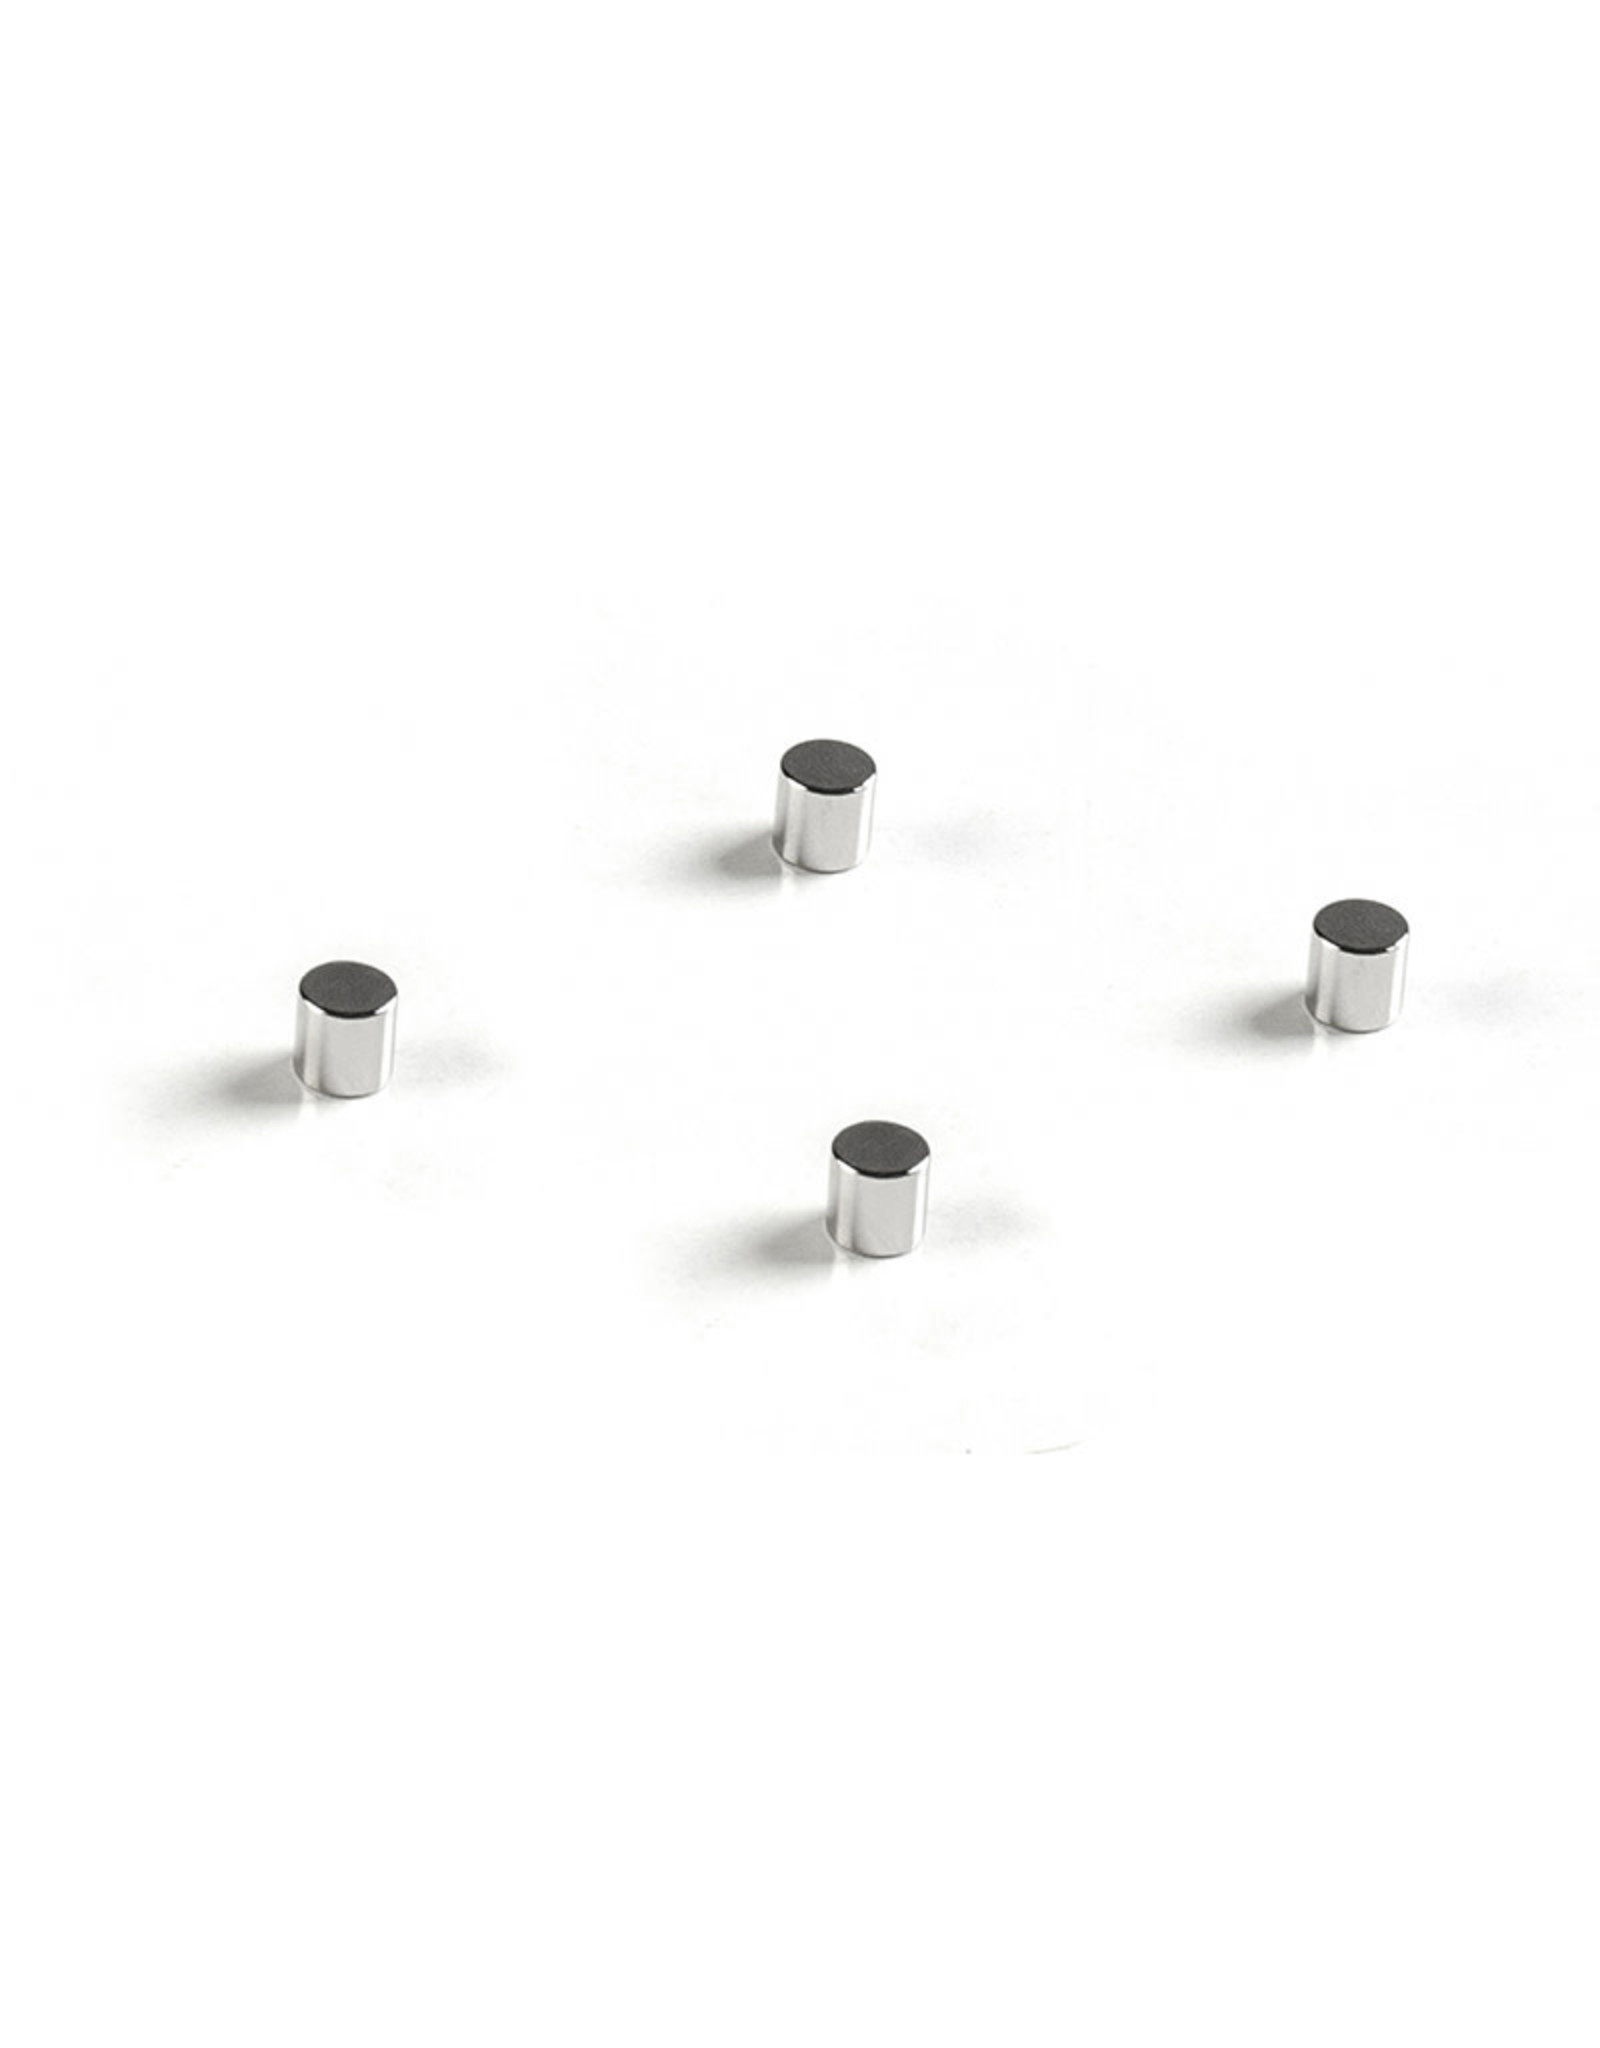 Kaiser Kaiser Neodymium Magnets (set of 4) for prolite LED 37/25 and 50/37